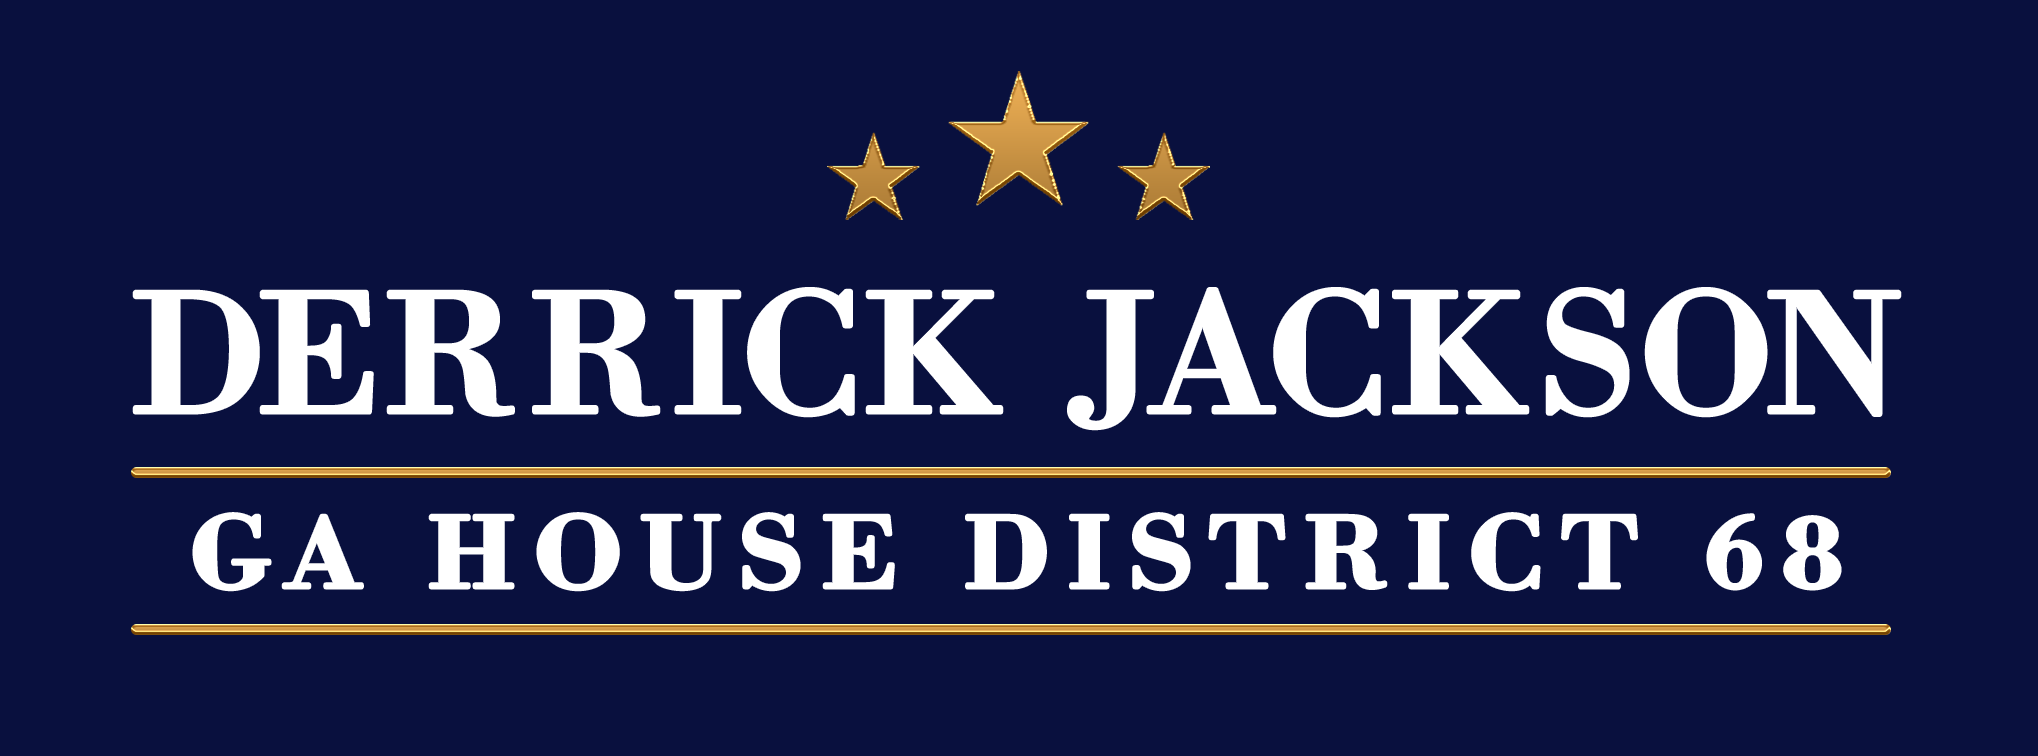 Vote Derrick Jackson